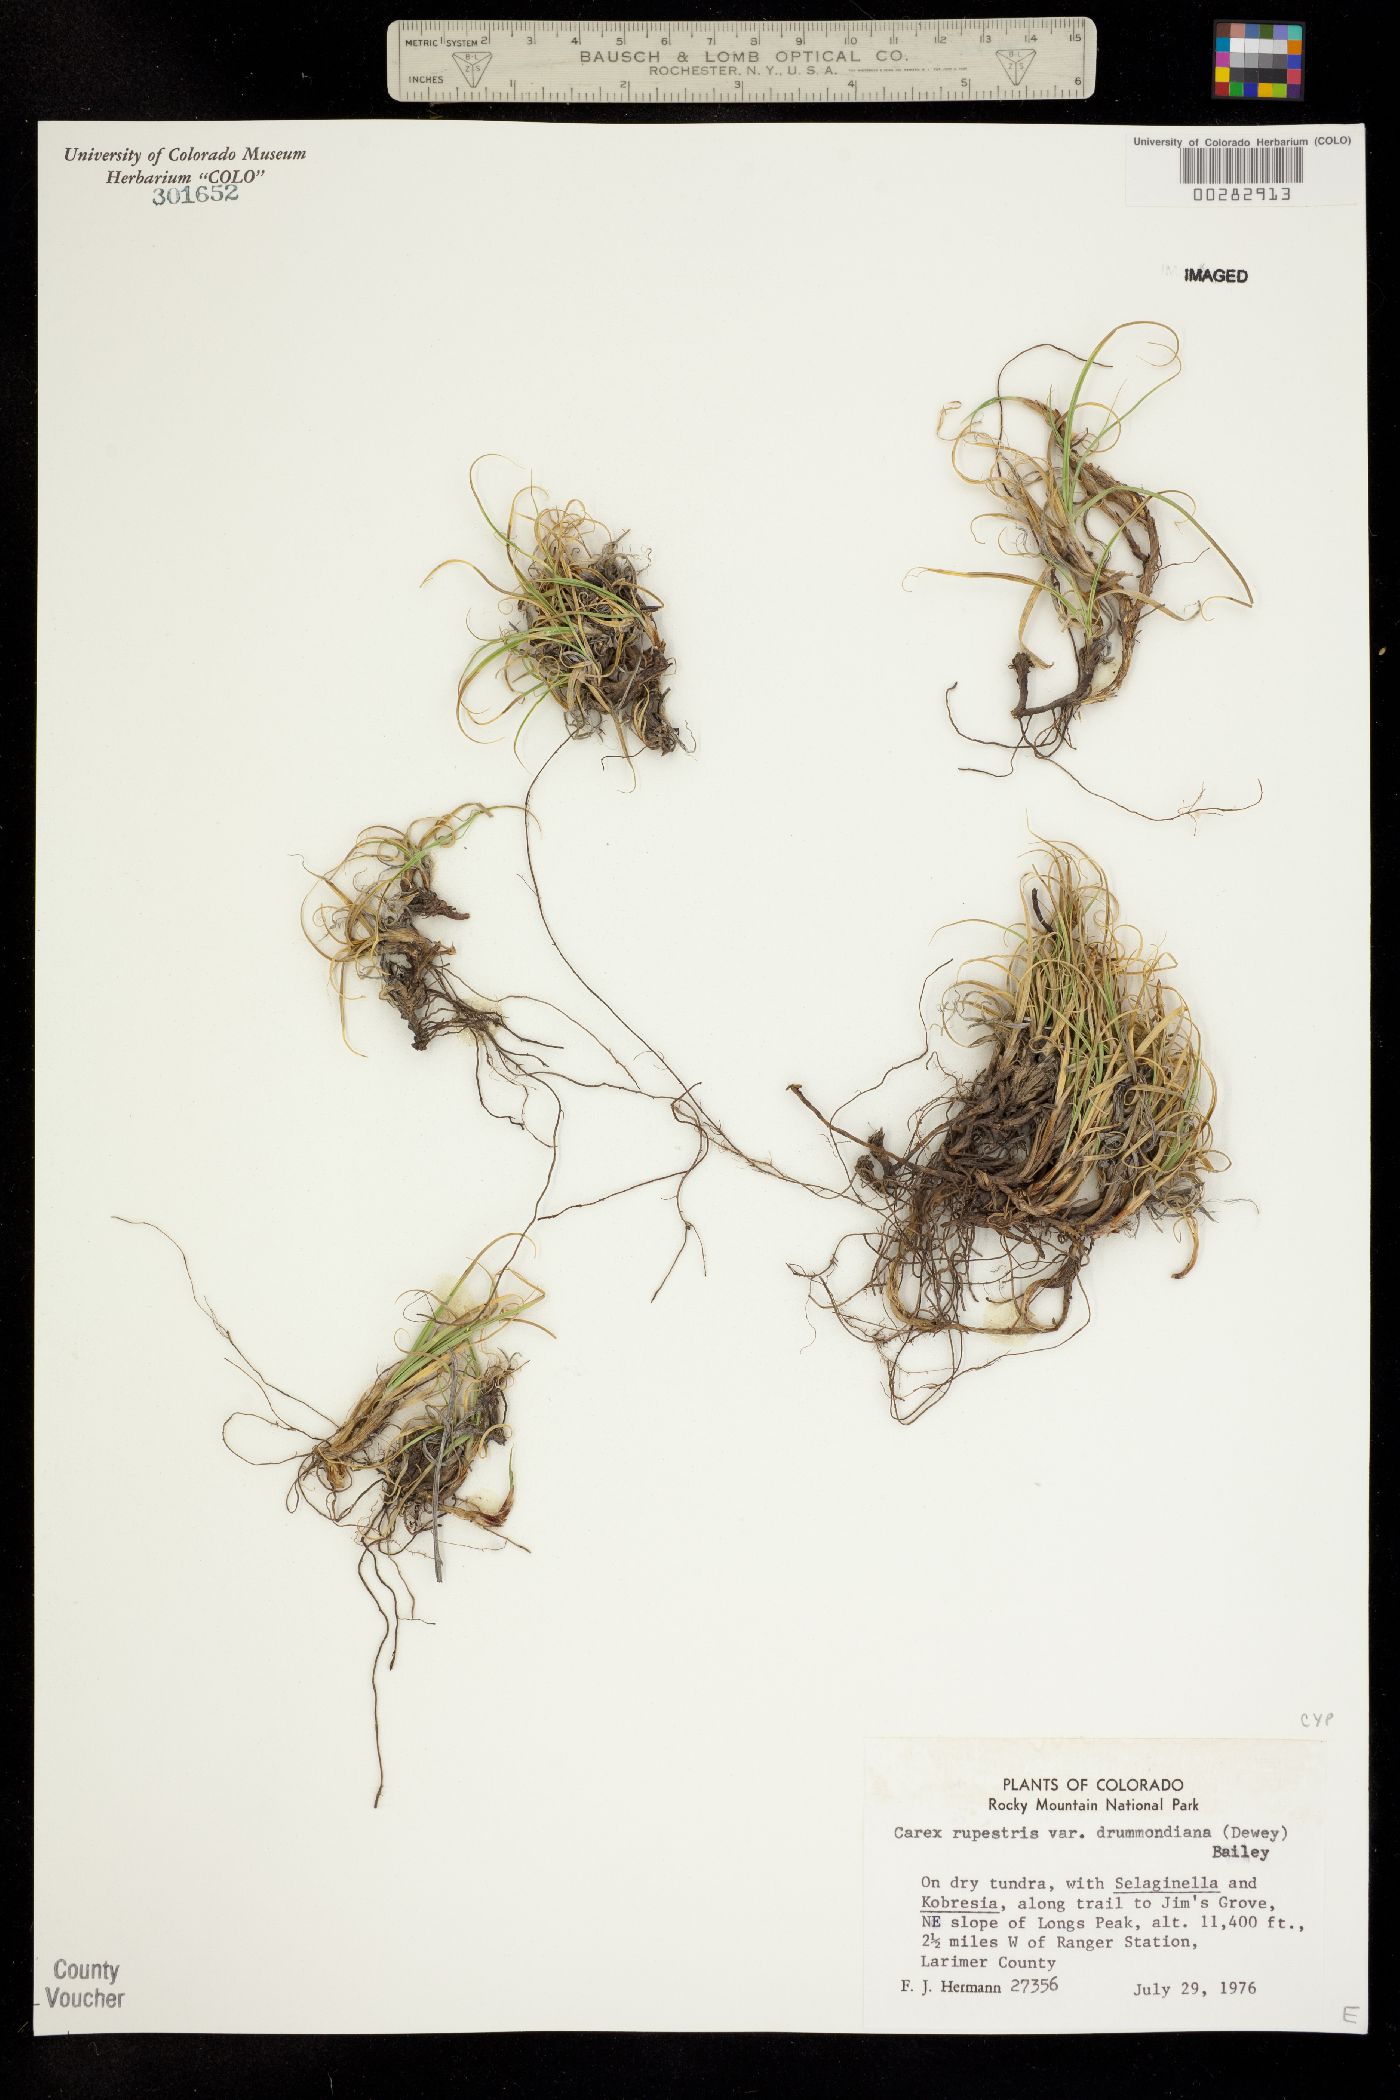 Carex rupestris subsp. drummondiana image